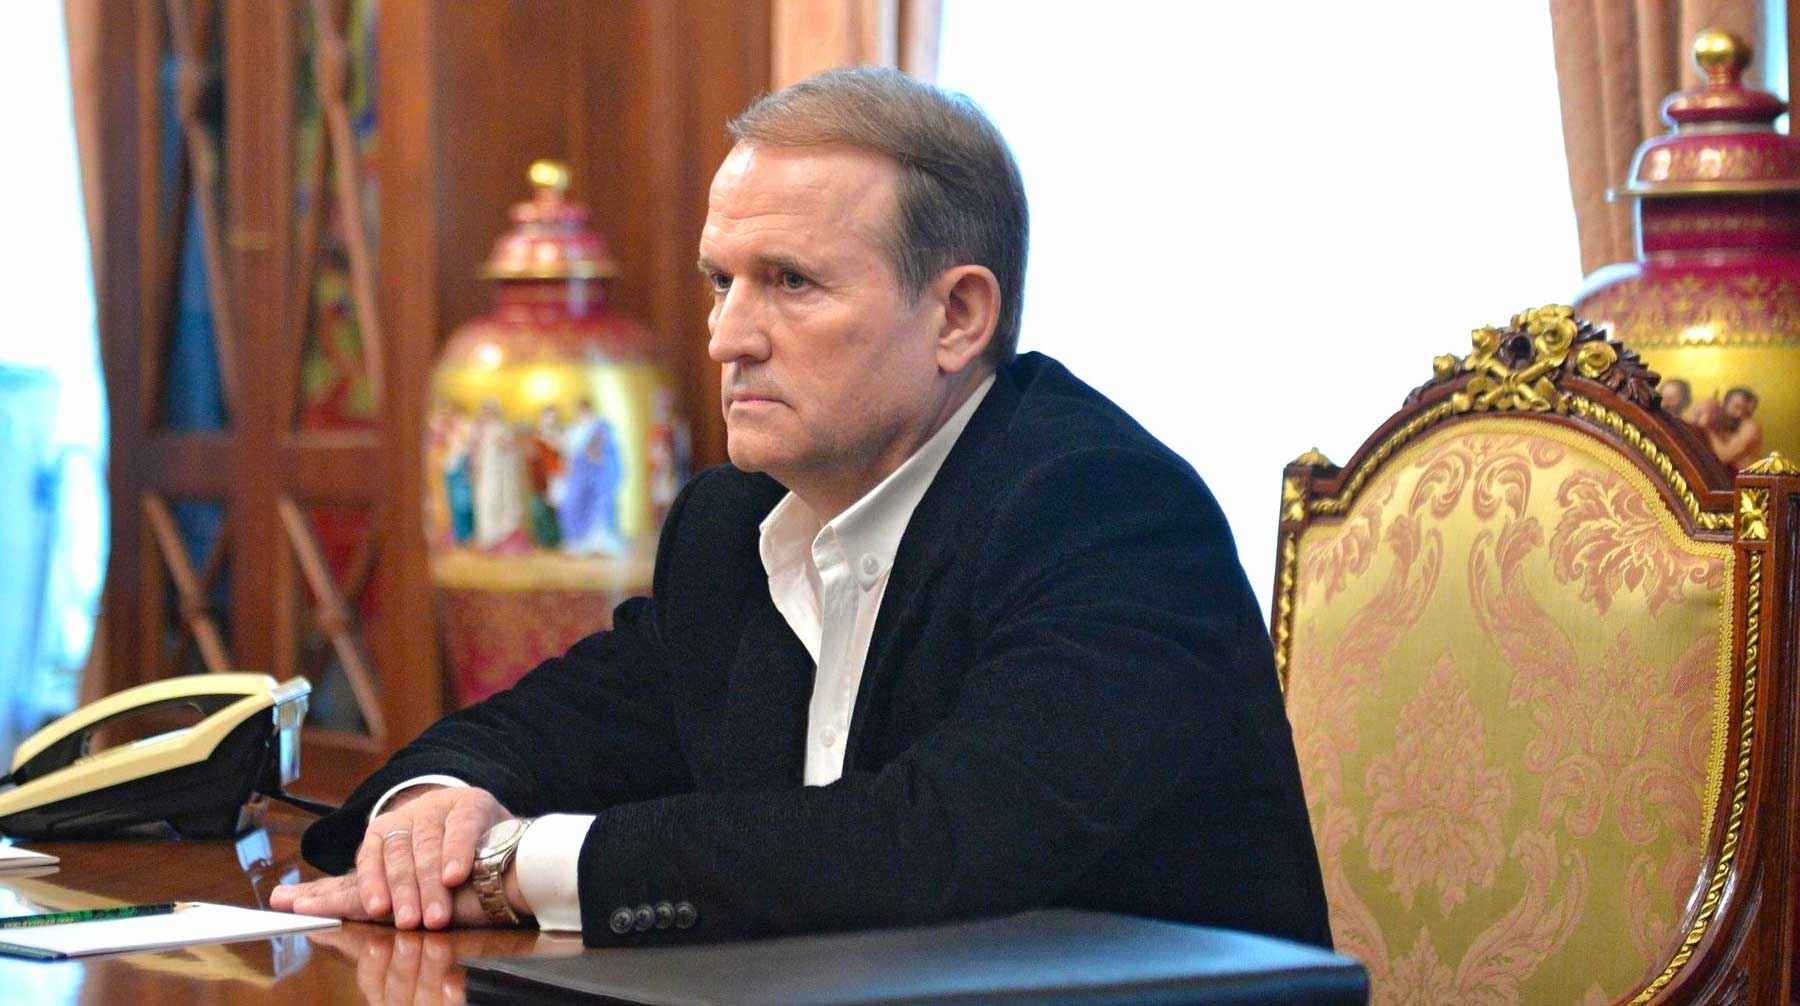 Оппозиционный украинский политик отметил, что расходится с Зеленским в принципиальных вопросах по донбасскому конфликту Виктор Медведчук